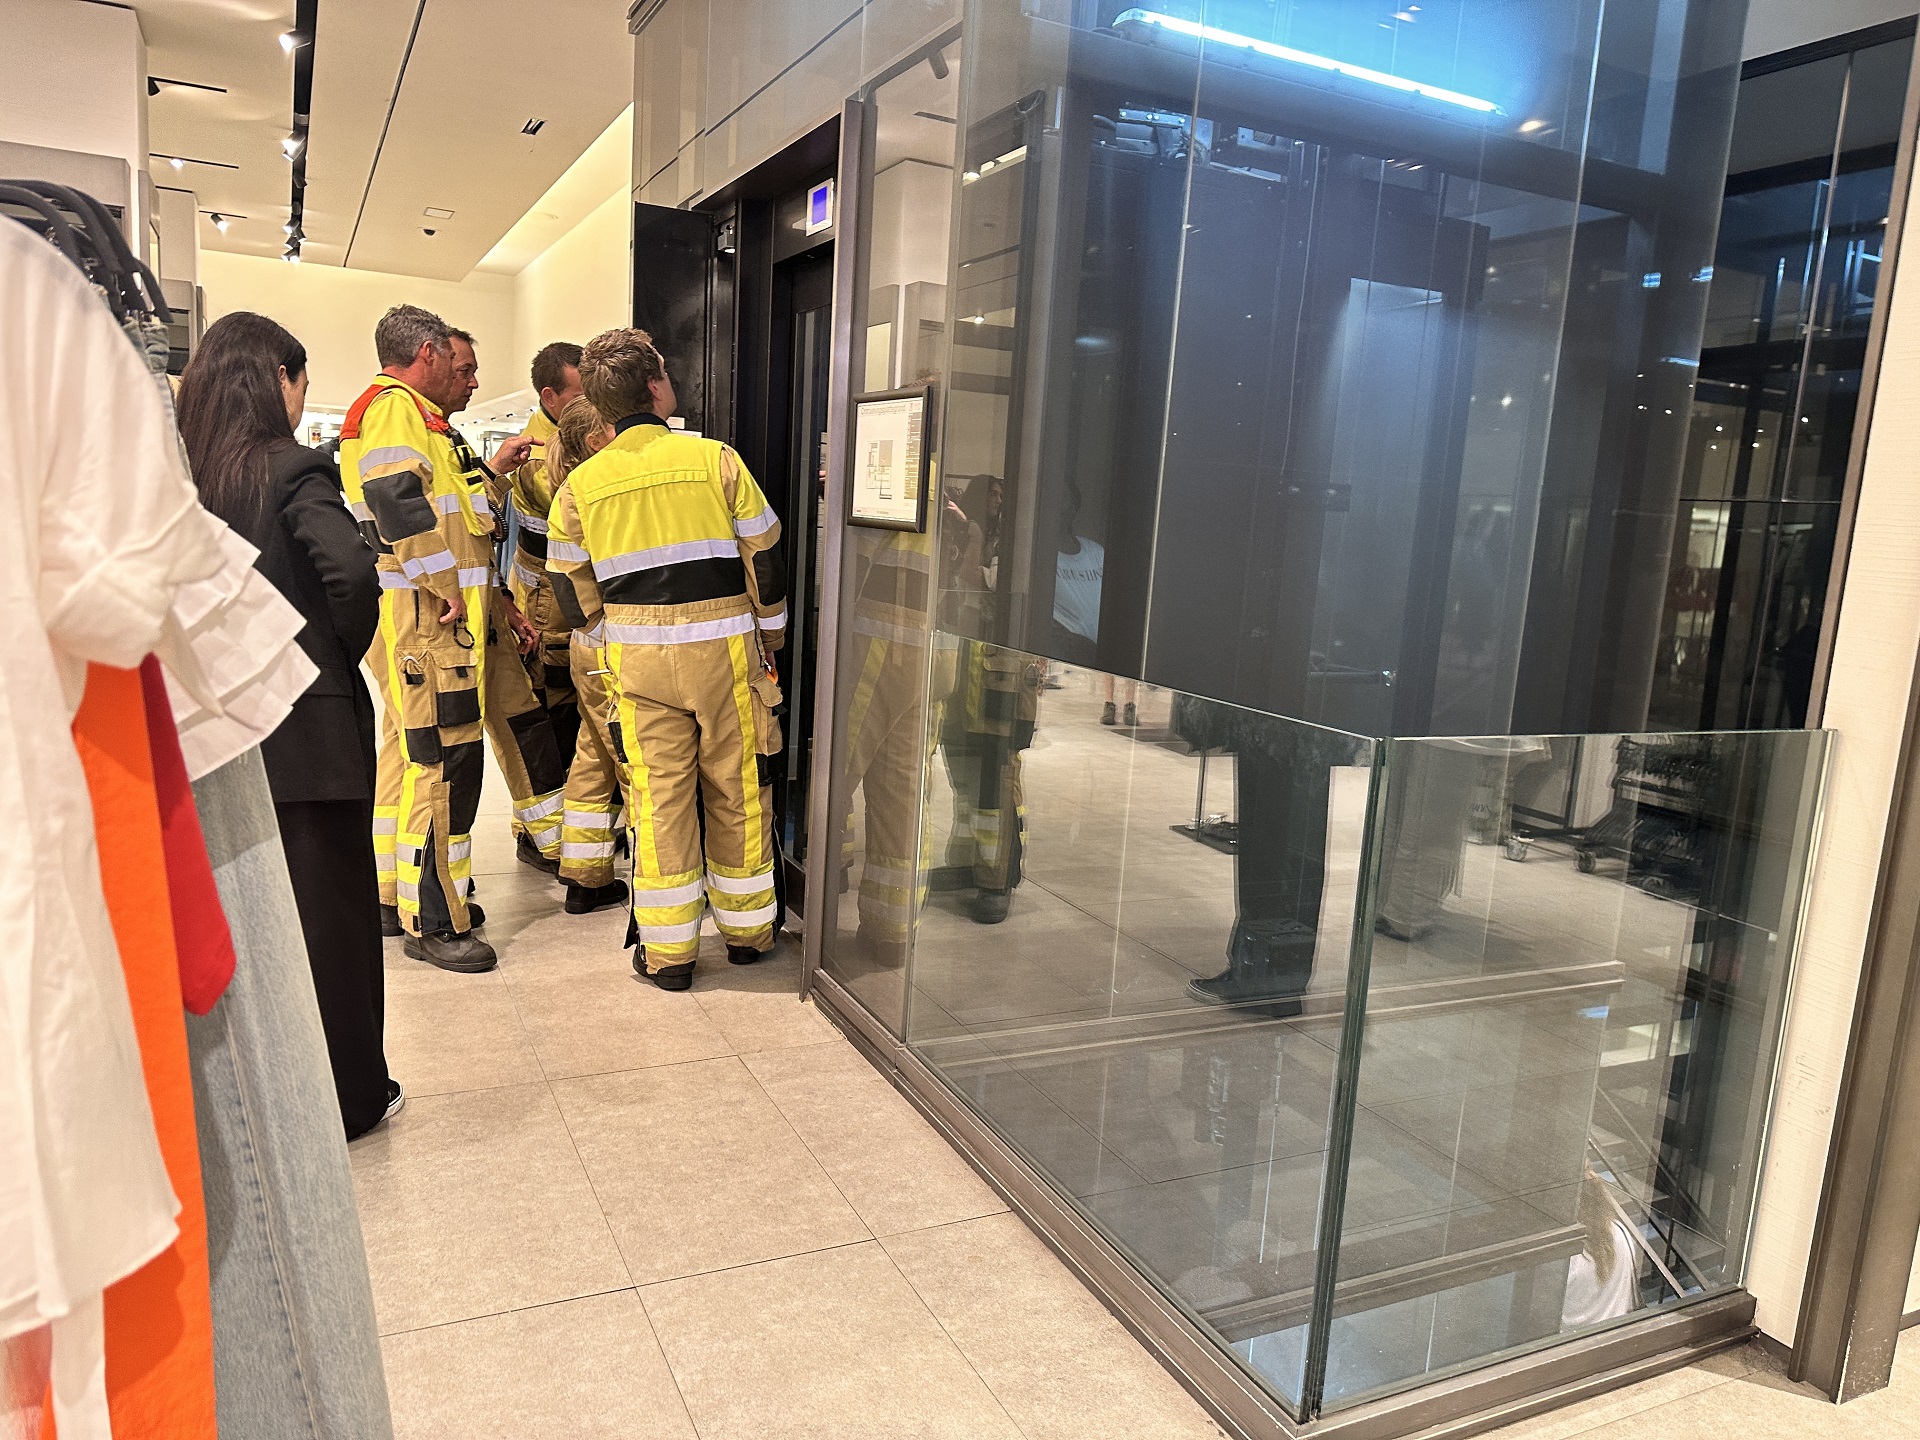 Gezin vast in lift bij kledingwinkel, brandweer komt in actie